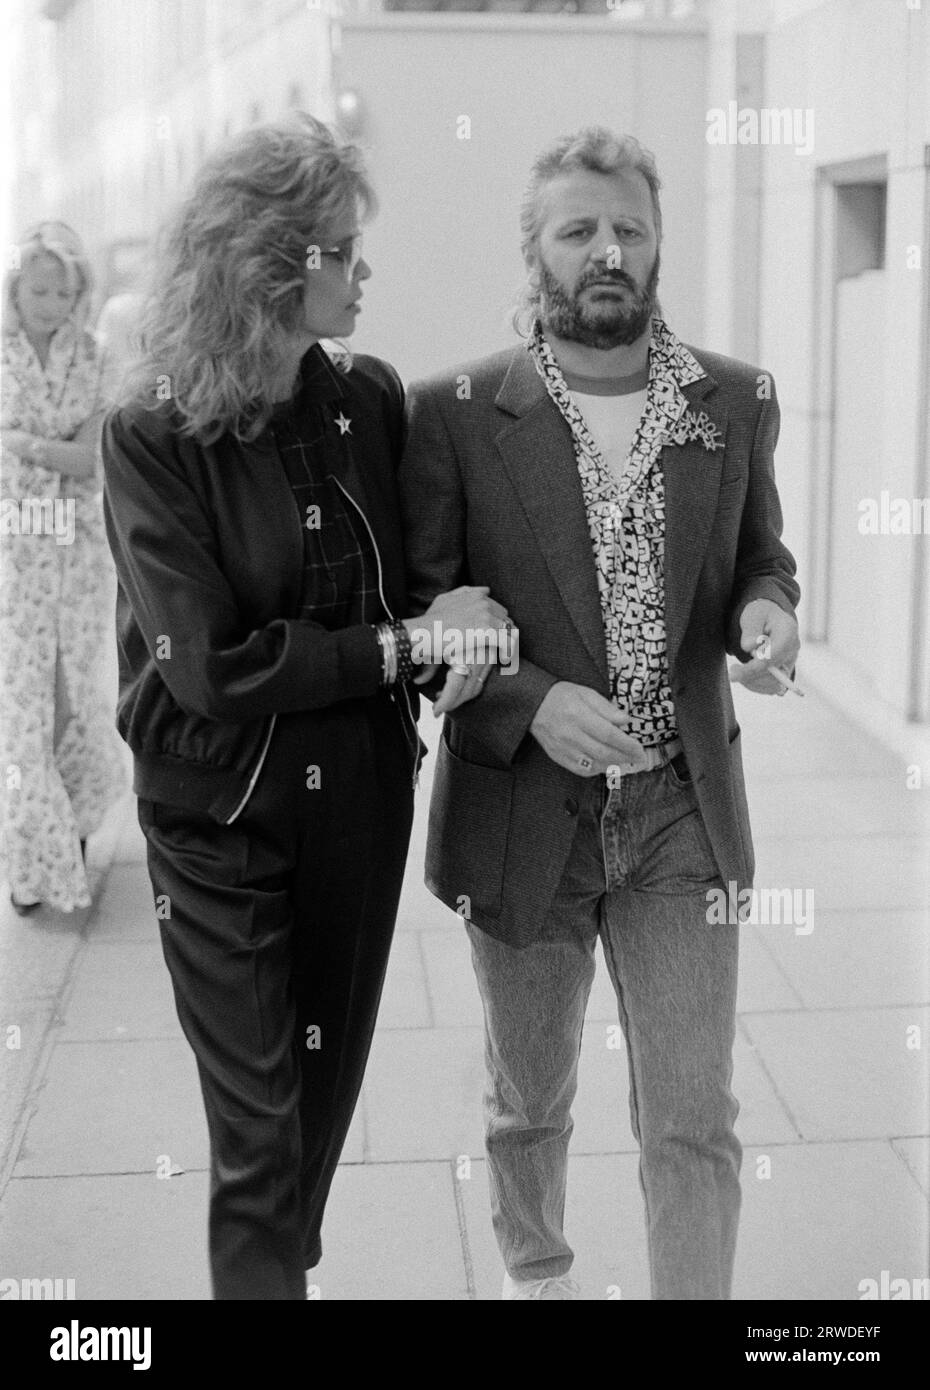 LONDRA, REGNO UNITO. Settembre 1986: L'ex Beatle Ringo Starr e la moglie Barbara Bach partecipano a un evento di moda di beneficenza a Londra. Foto del file © Paul Smith/Featureflash Foto Stock